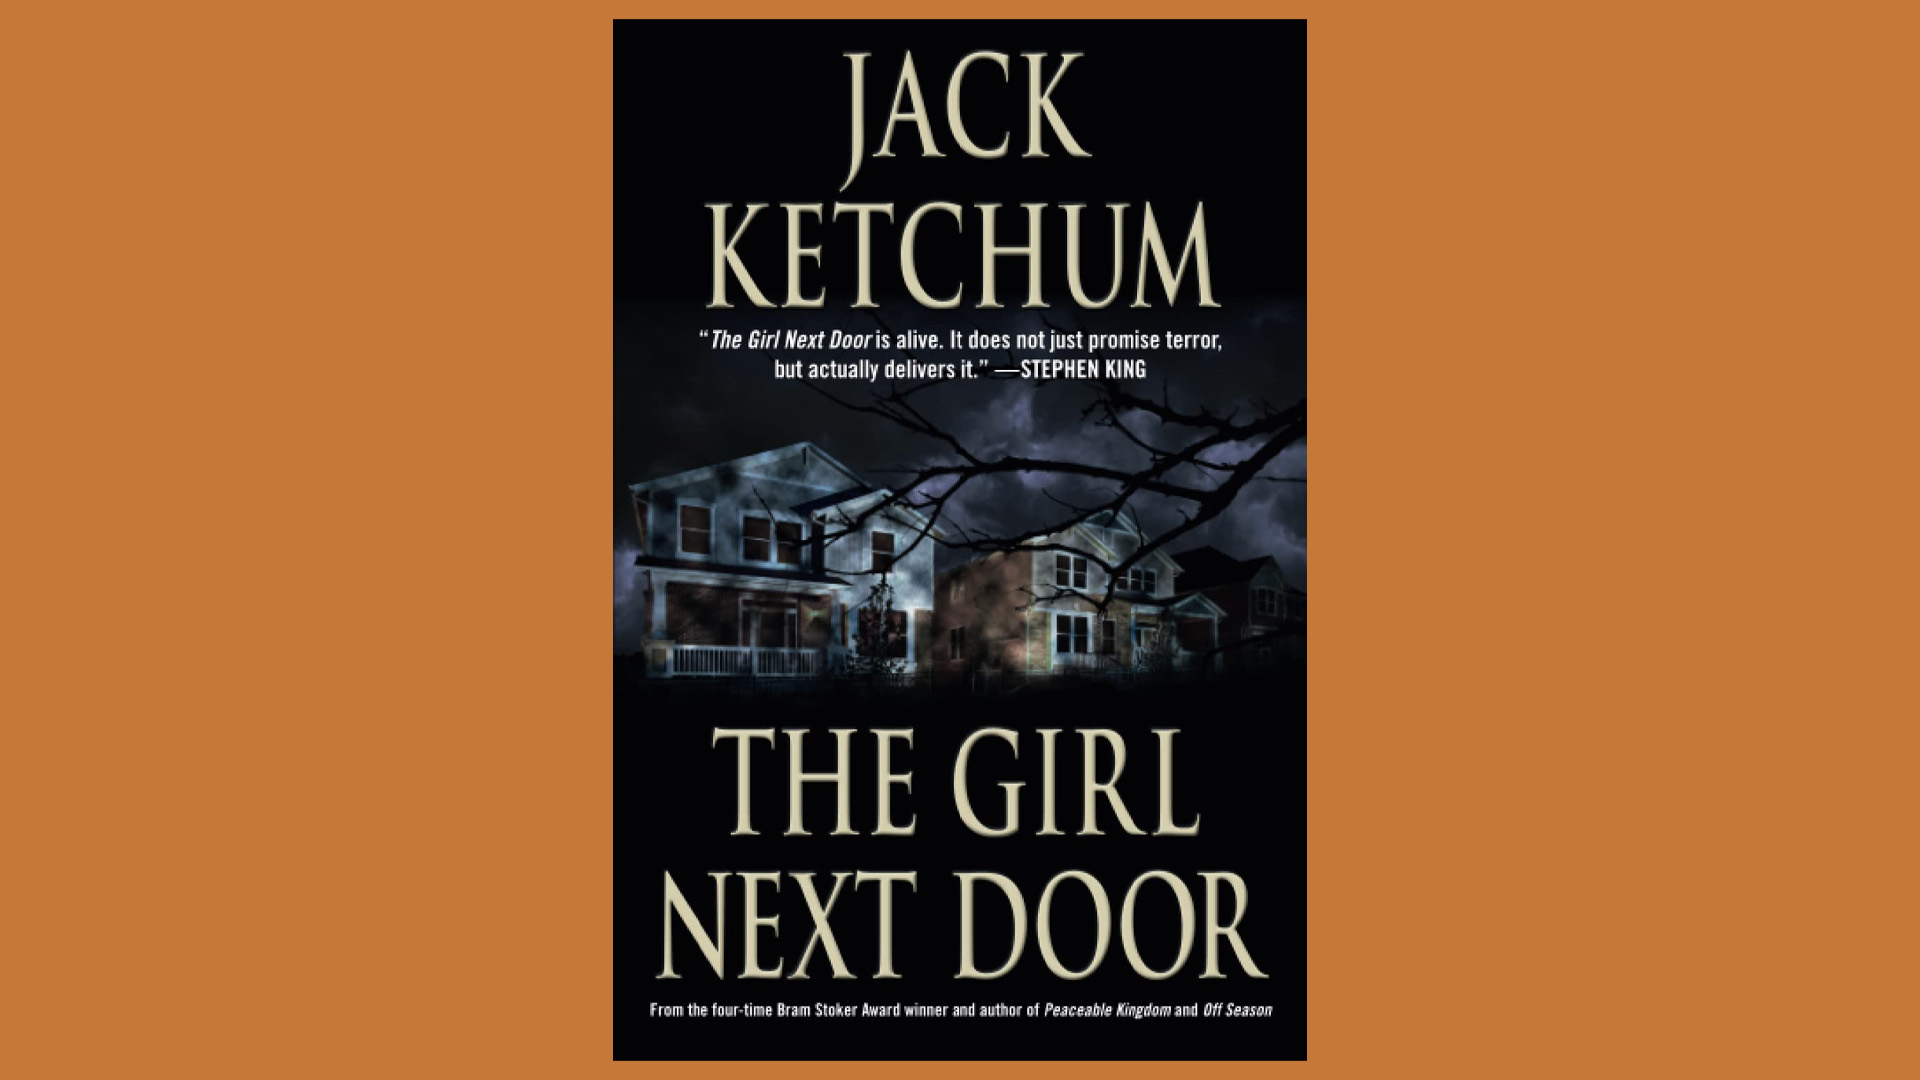 Omslagsbild till boken The Girl Next Door. Två typiskt amerikanska hus, en mörk och stormig natt. I förgrunden skymtas grenar från ett träd.